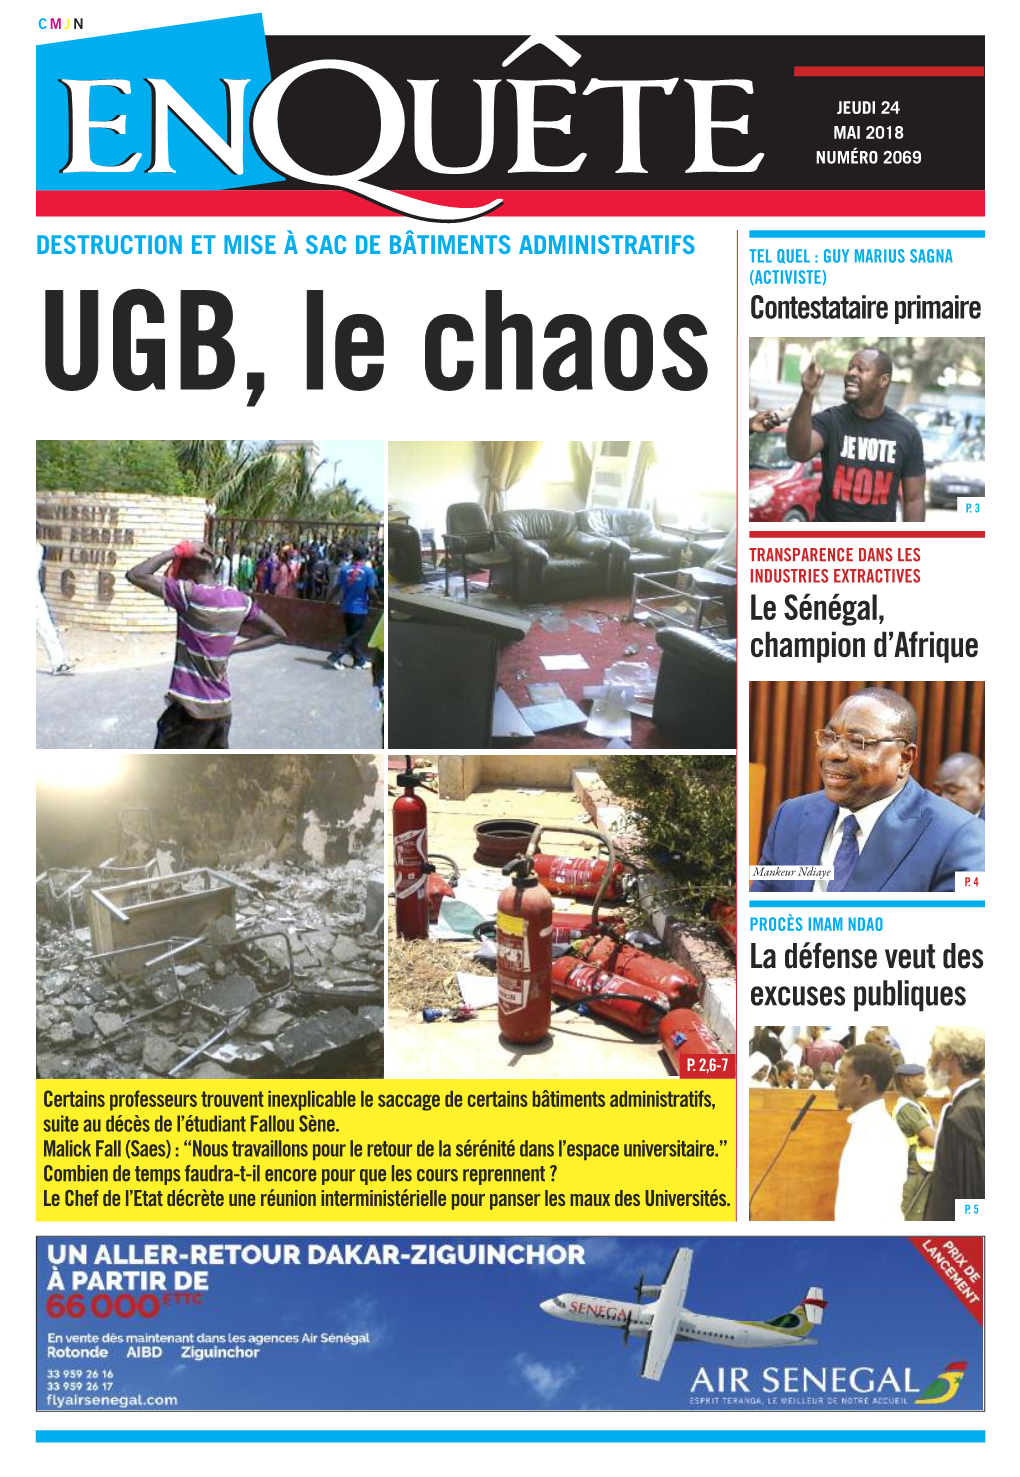 La Défense Veut Des Excuses Publiques Le Sénégal, Champion D